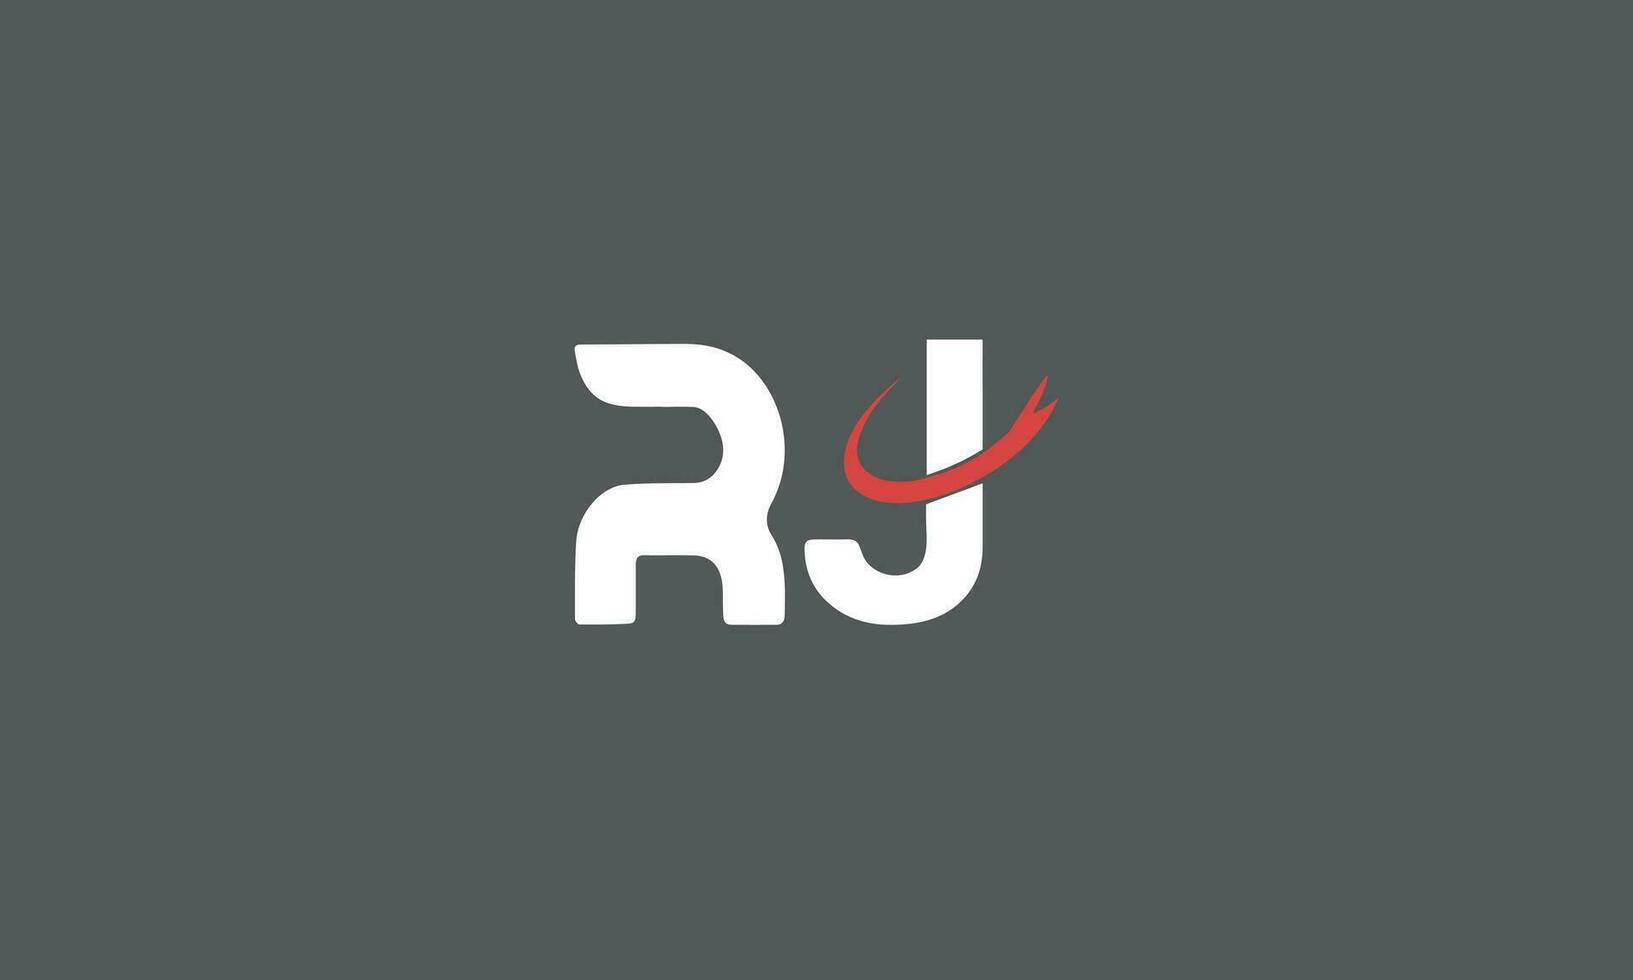 JR or  RJ letter alphabet logo design in vector format.